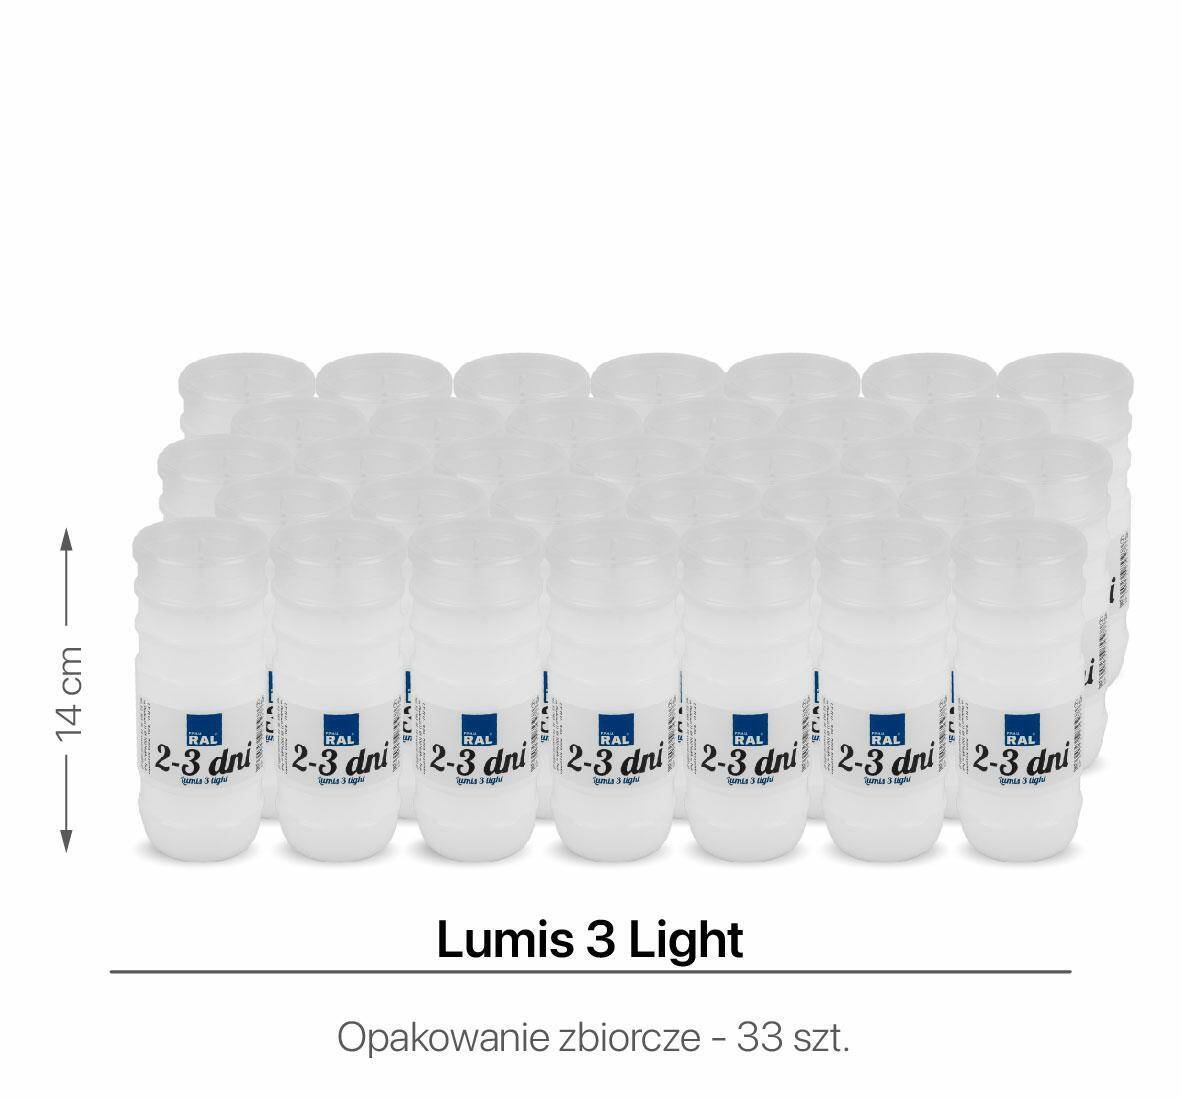 Wkłady do zniczy Lumis 3 Light 14 cm (Zdjęcie 1)